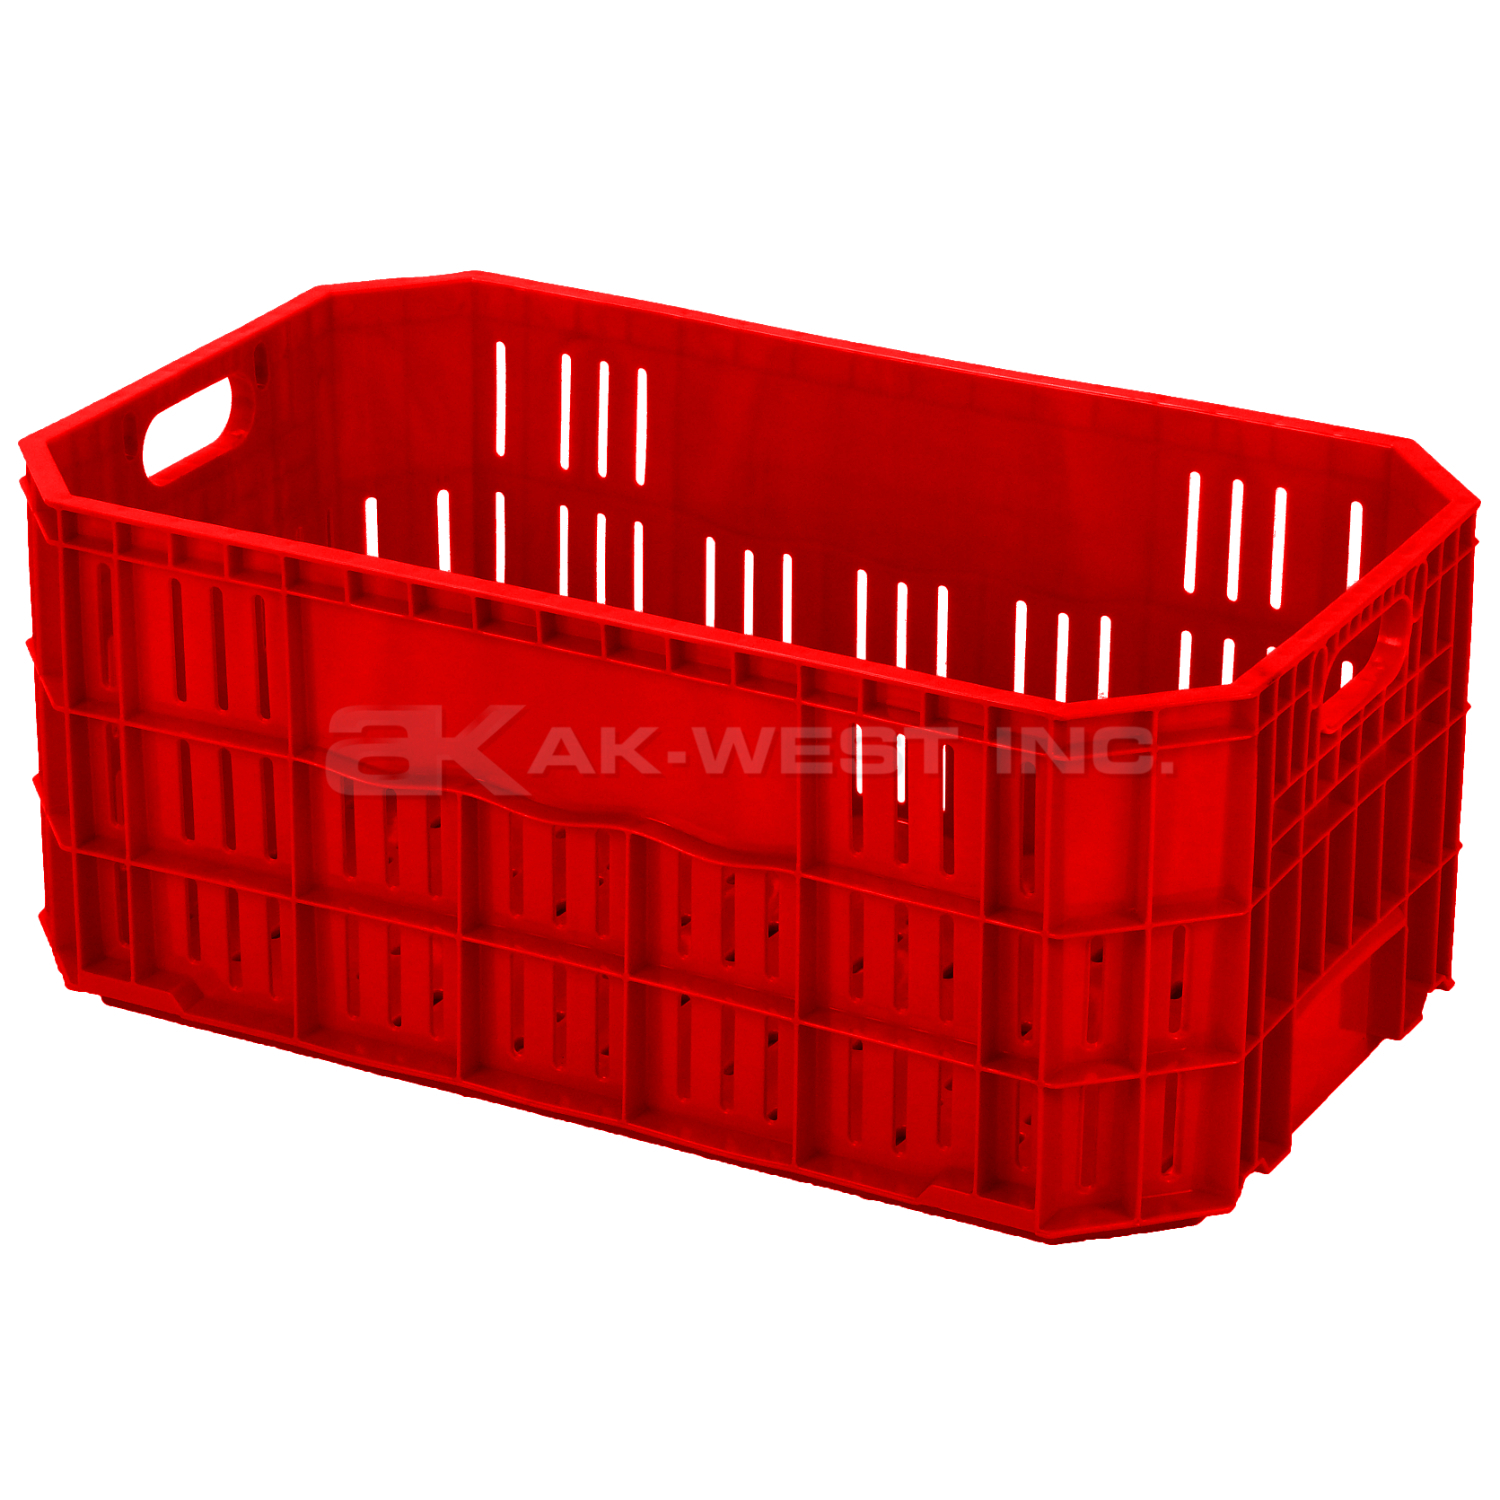 Red, 20"L x 12"W x 8"H Vented Handsfree Crate